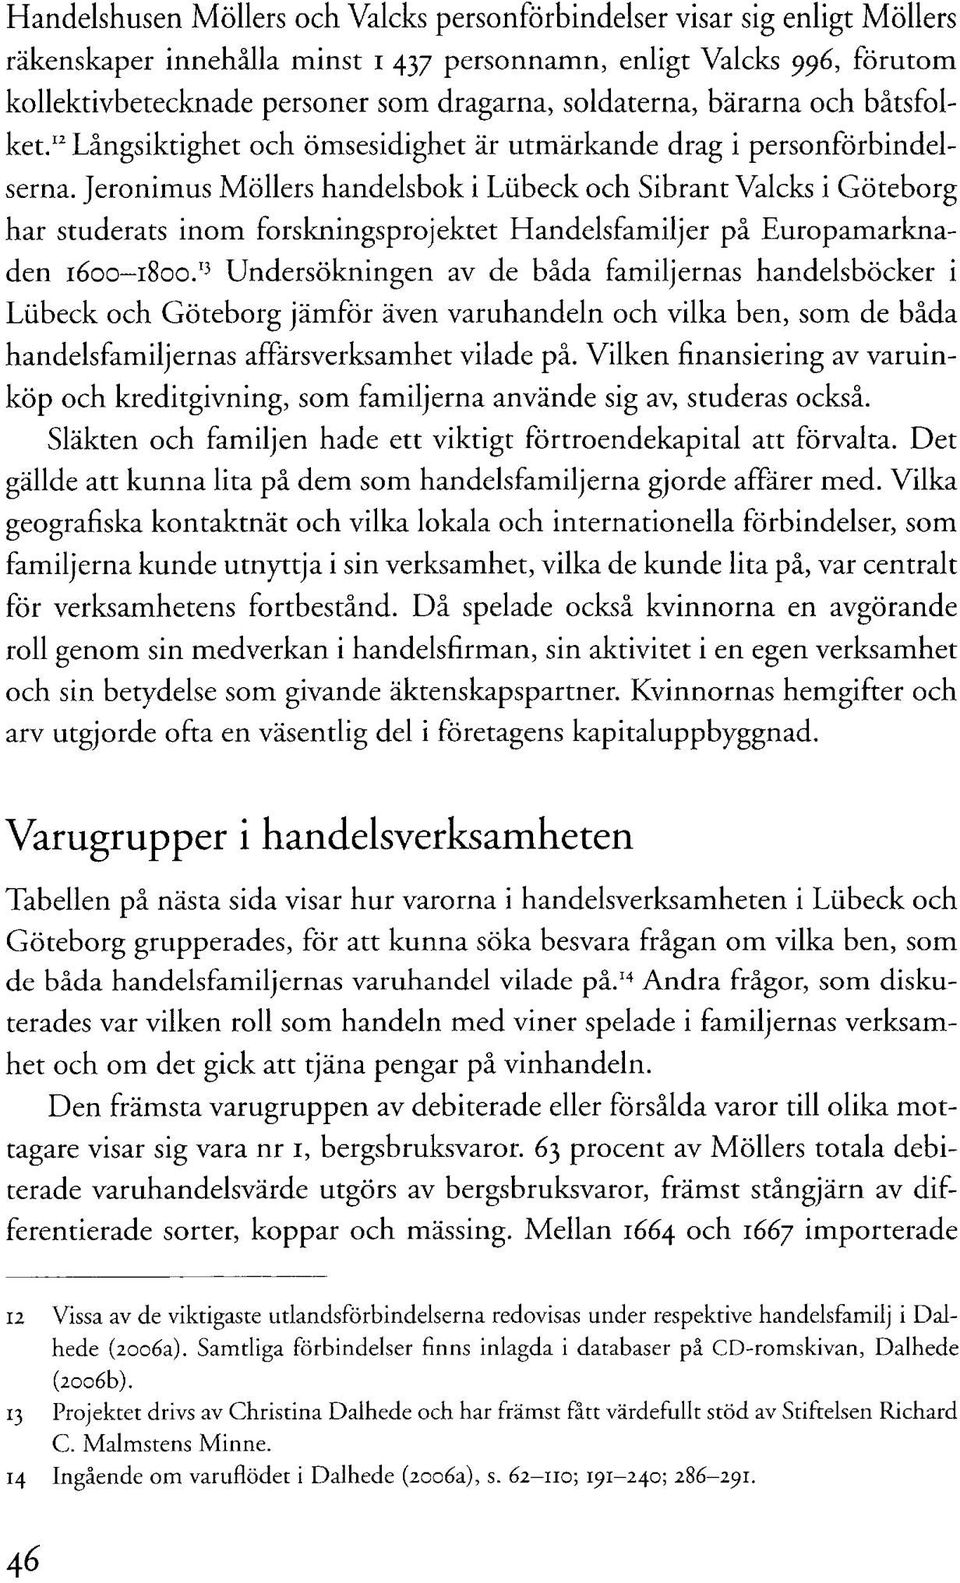 Jeronimus Möllers handelsbok i Liibeck och Sibrant Valcks i Göteborg har studerats inom forskningsprojektet Handelsfamiljer på Europamarknaden 1600-1800.